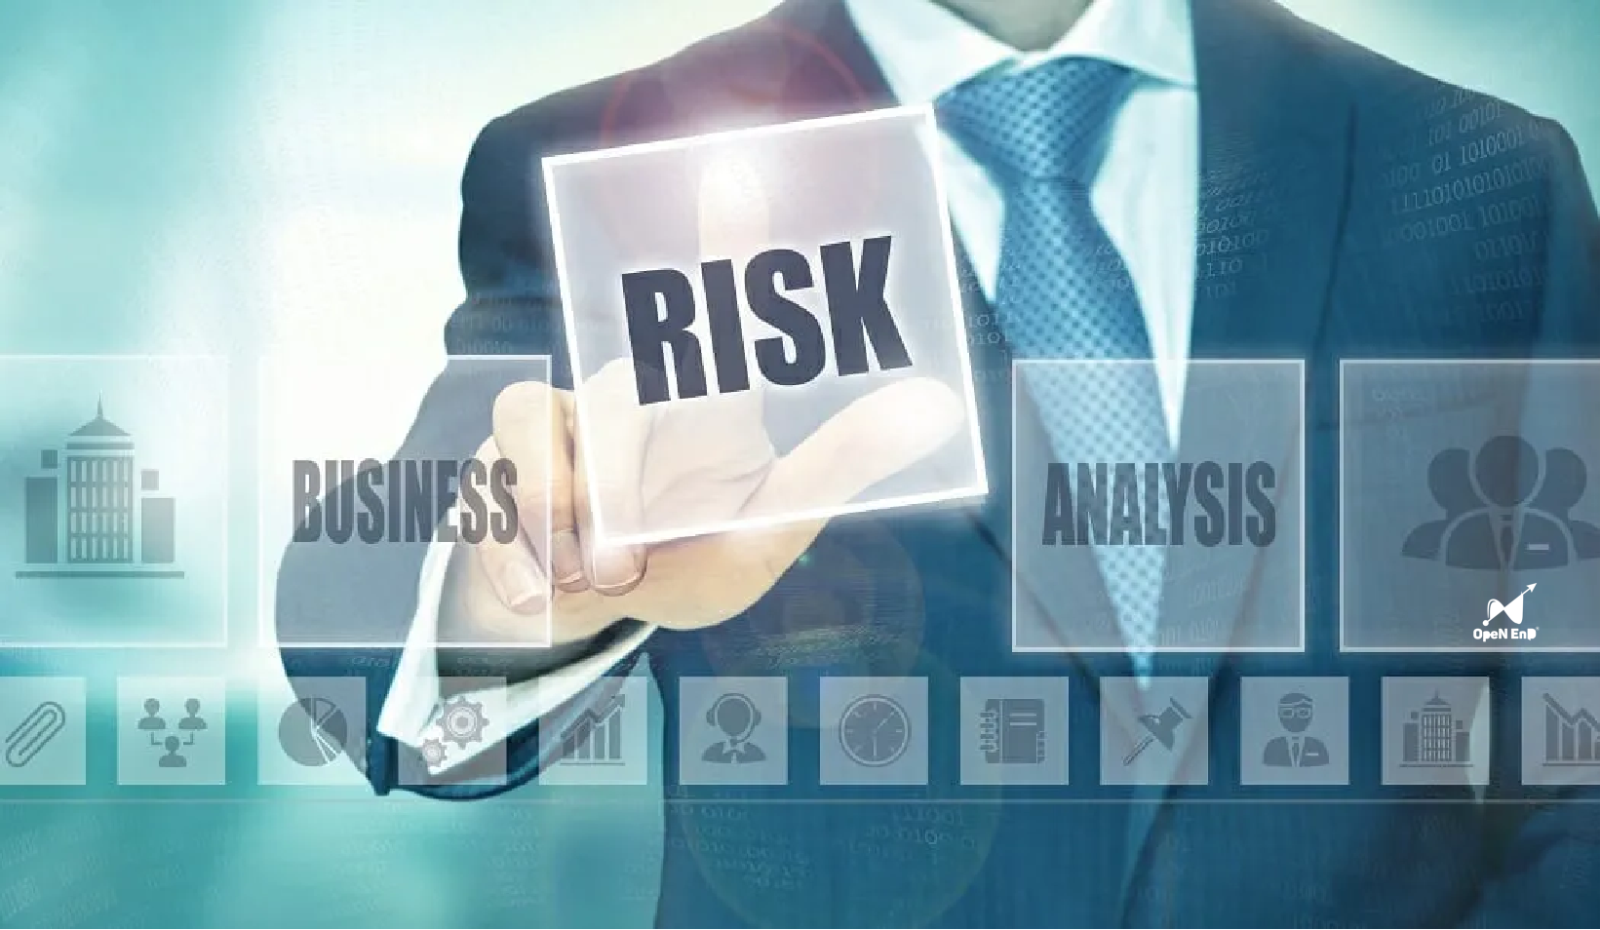 Kinh doanh chân chính để giảm thiểu rủi ro